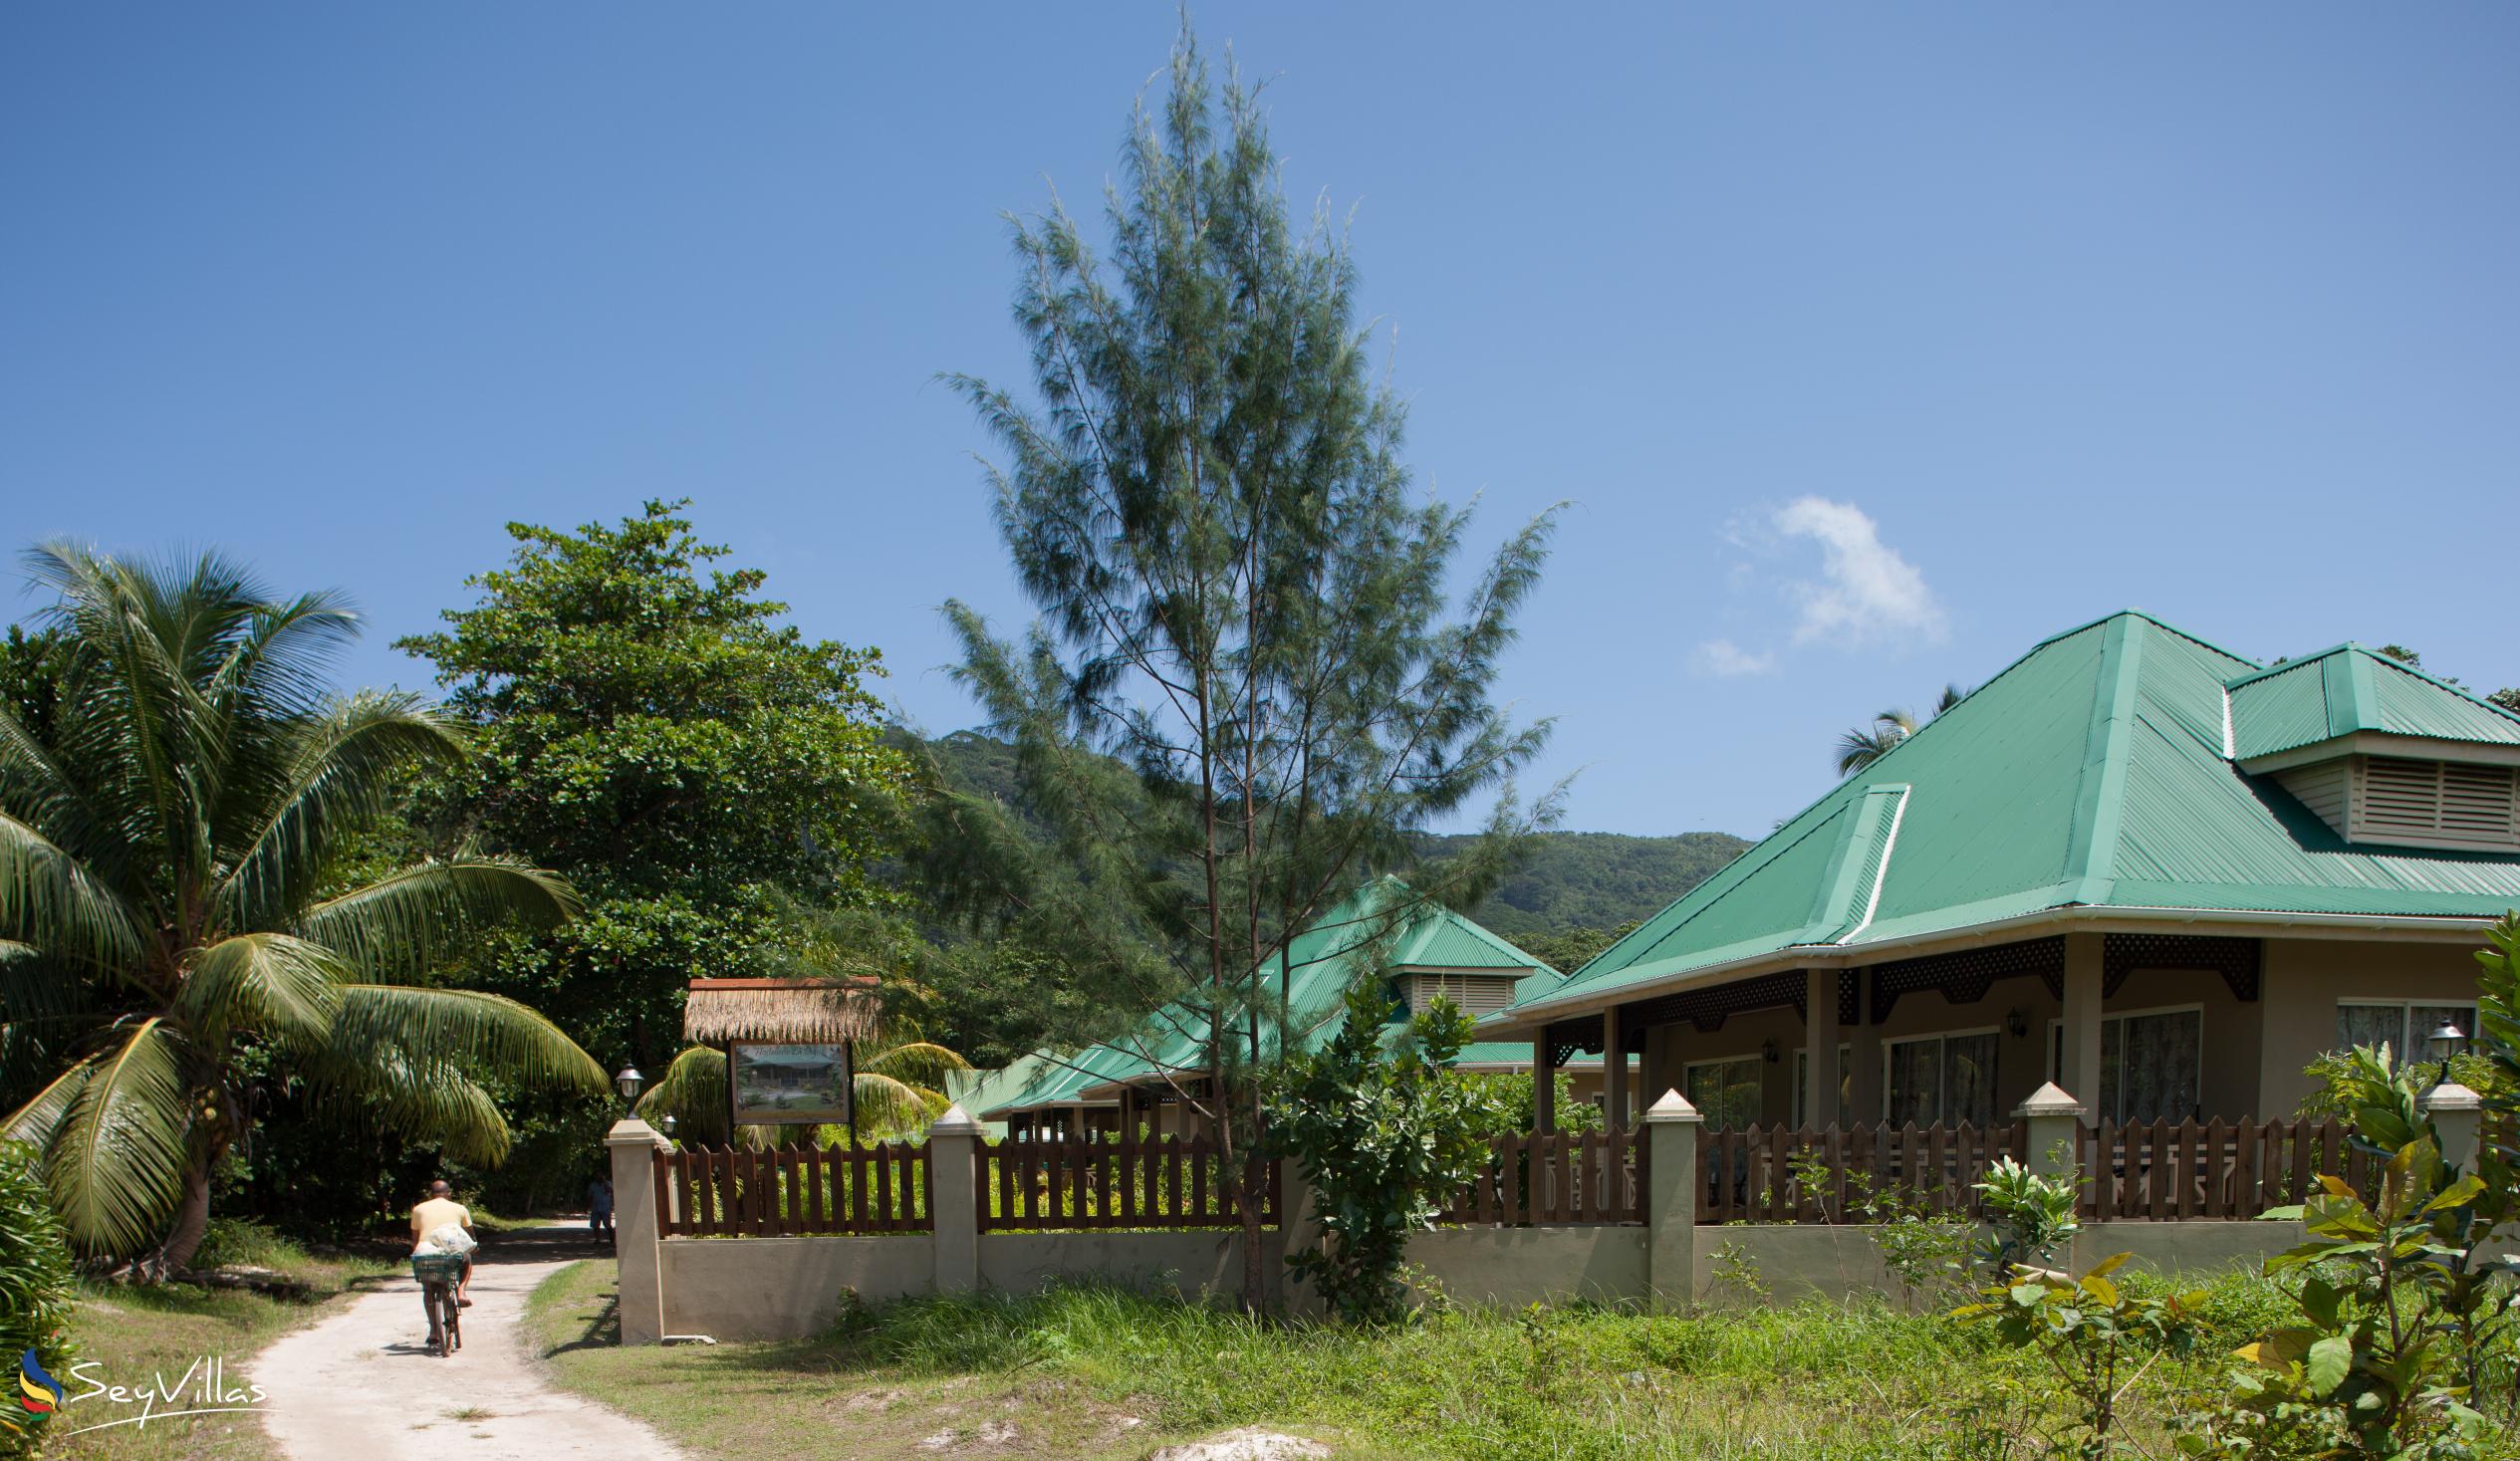 Photo 78: Hostellerie La Digue - Outdoor area - La Digue (Seychelles)